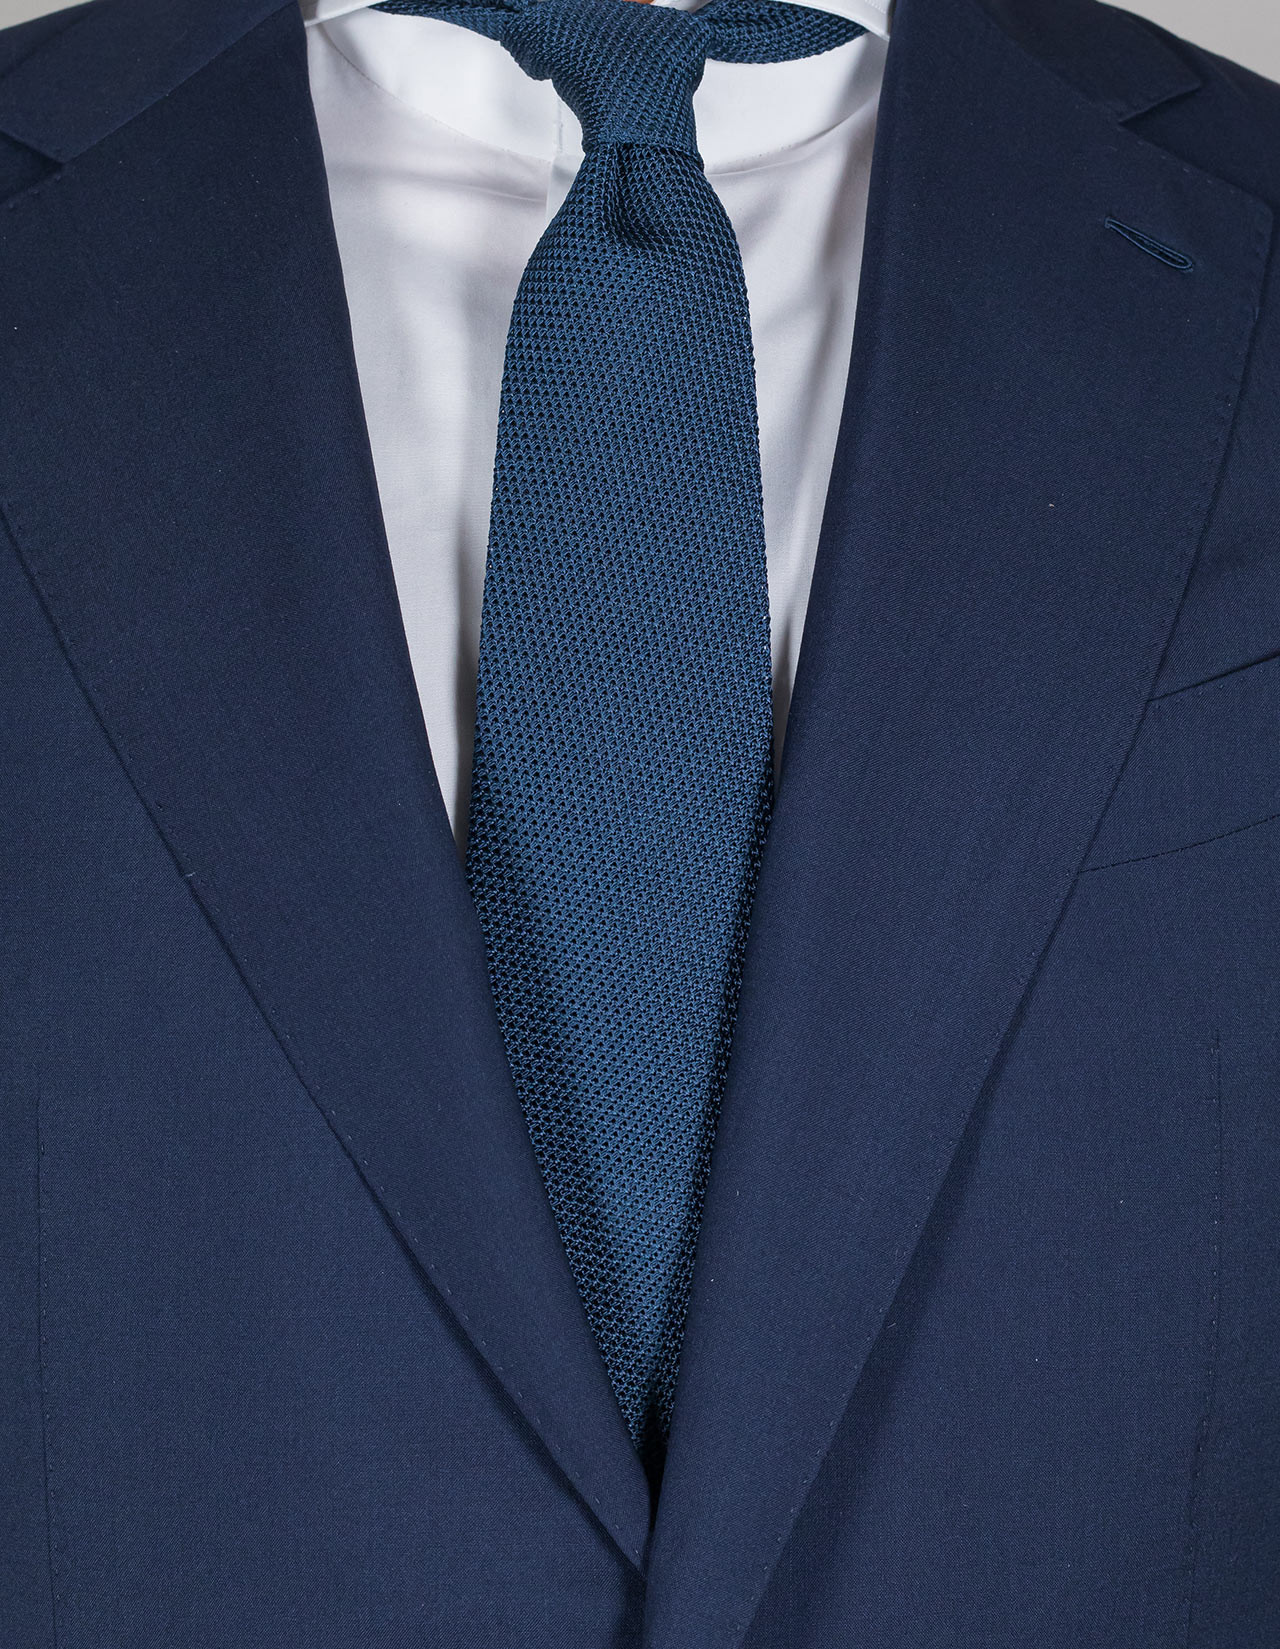 Cesare Attolini Krawatte in blau aus Seidenstrick ungefüttert